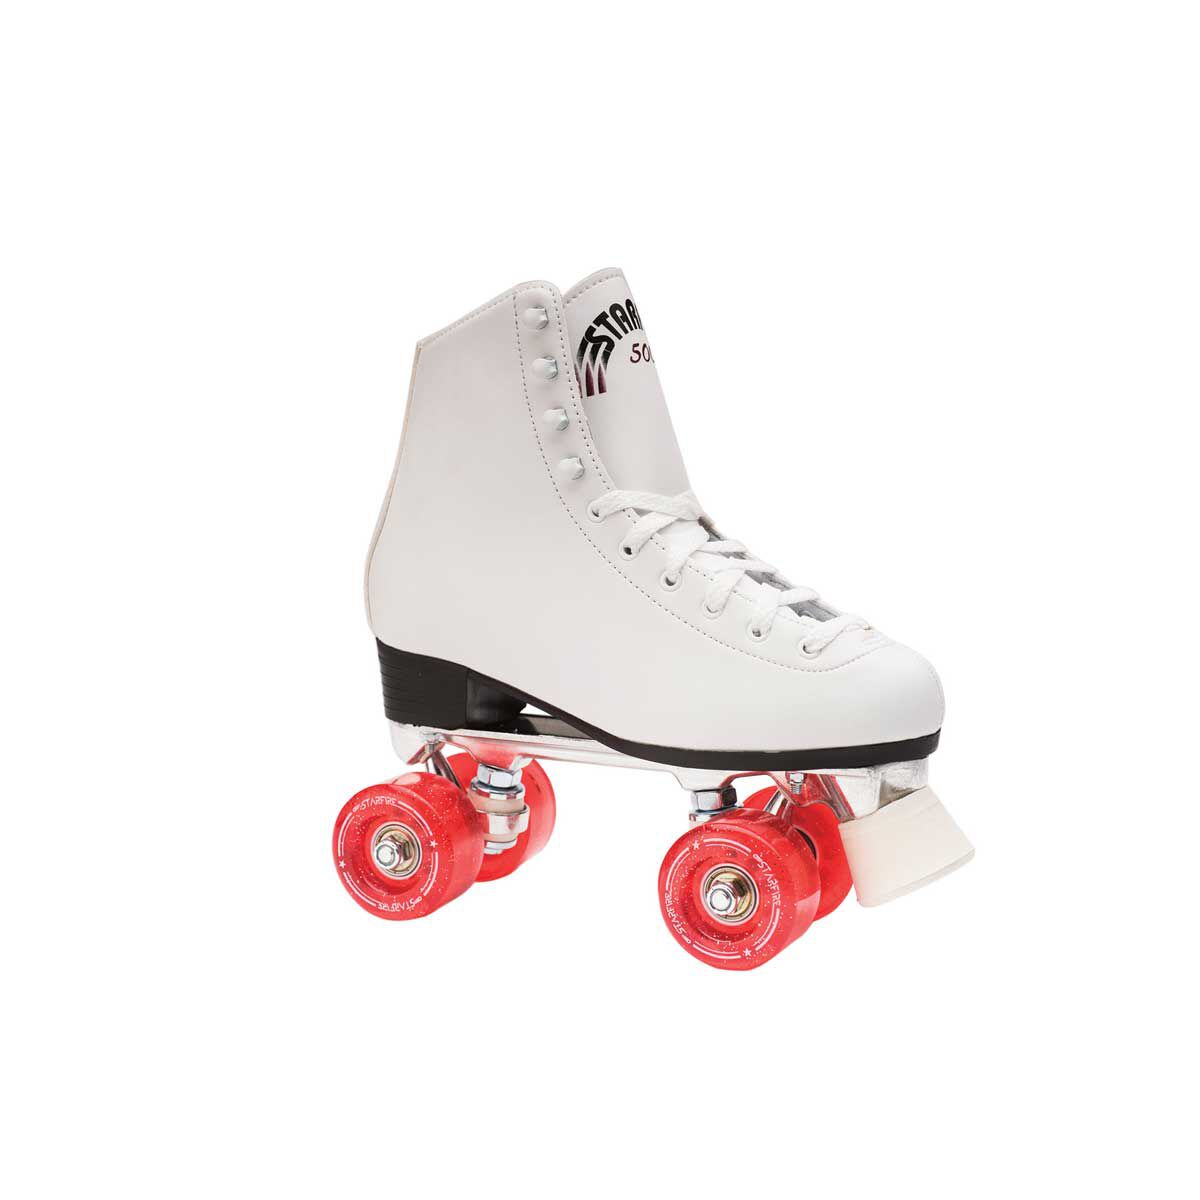 Starfire 500 Kids Roller Skates | Rebel 